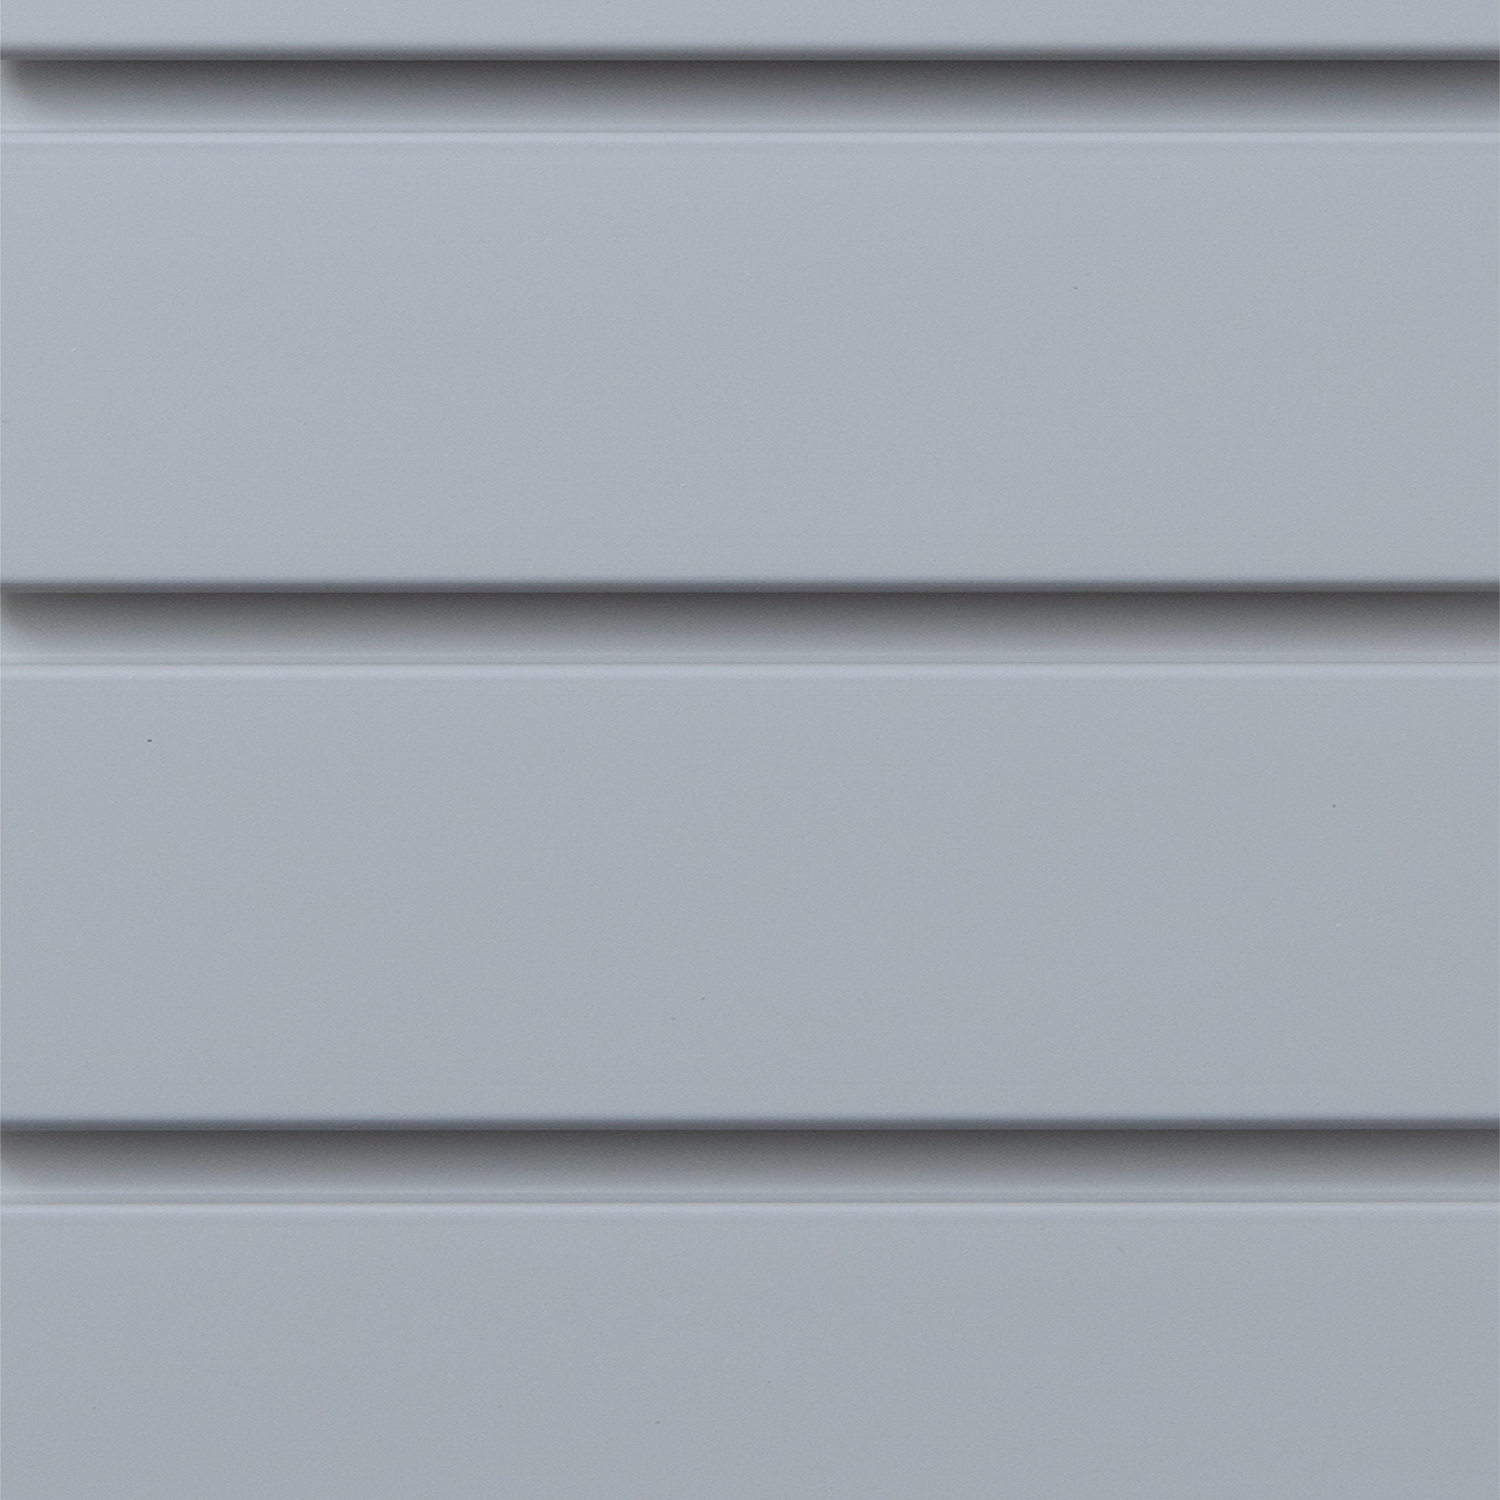 Grey Slat Wall Inspired Closets